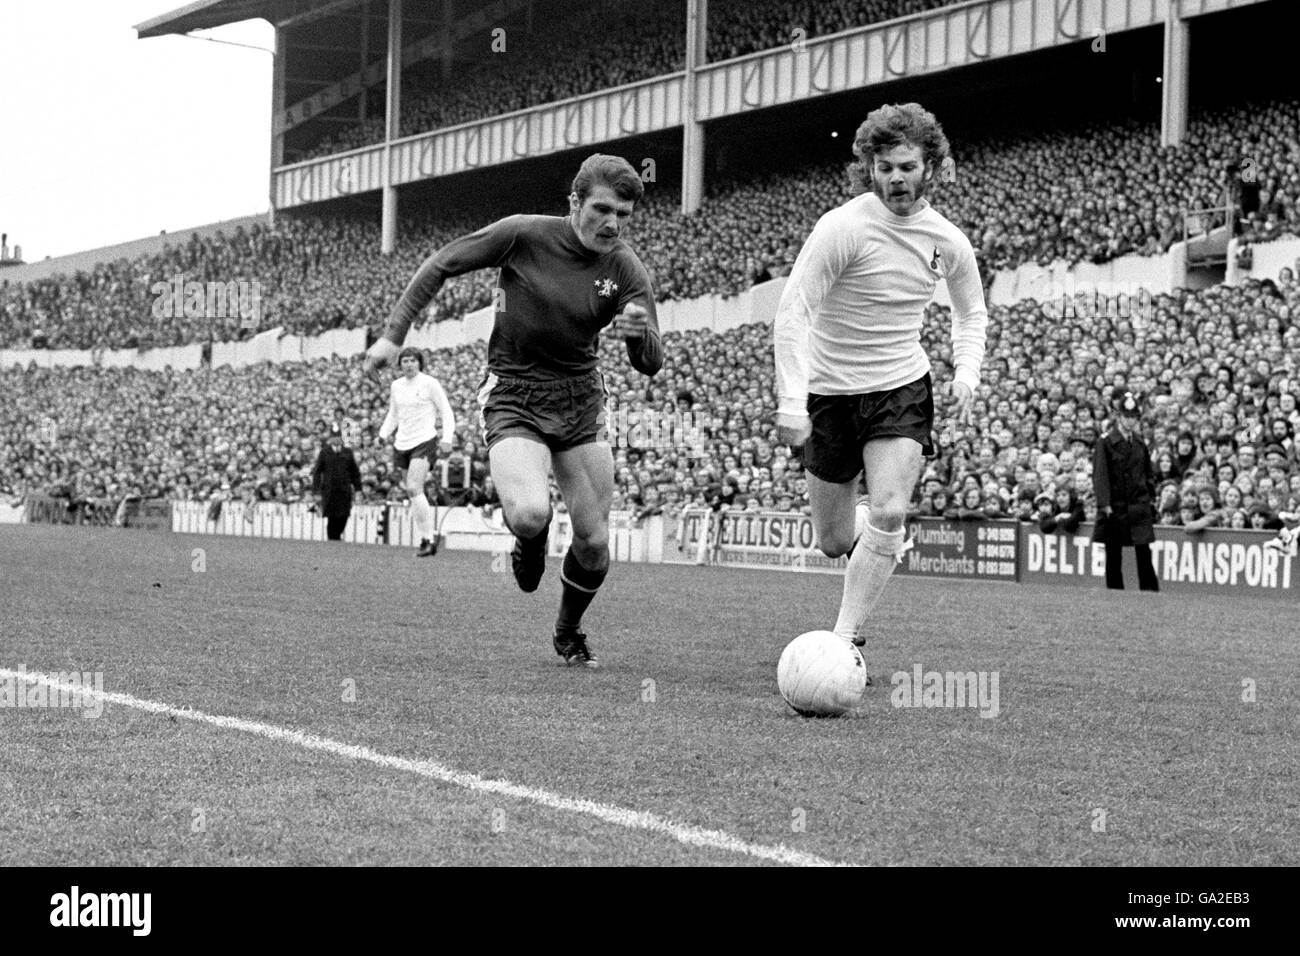 Soccer - Tottenham Hotspur v Chelsea. Alfie Conn, of Tottenham Hotspur (right), and Charlie Cooke of Chelsea (left). Stock Photo